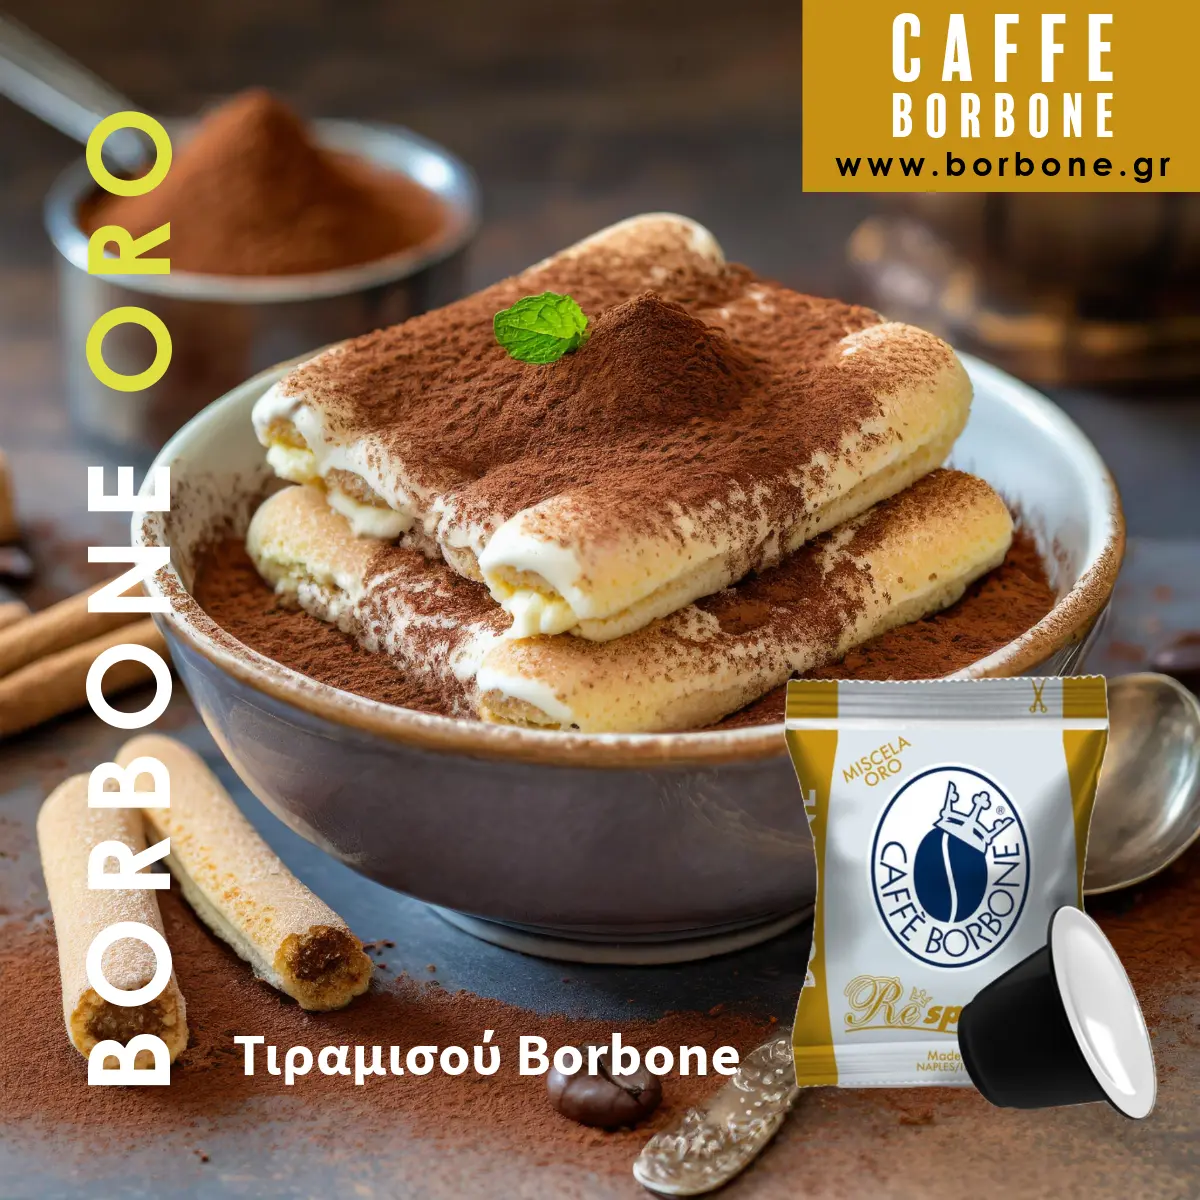 Μάθετε πως να φτιάχνετε το πιο κλασικό ιταλικό γλυκό, το τιραμισού, με εσπρέσο Caffe Borbone. Μια εύκολη και σίγουρα επιτυχημένη συνταγή!